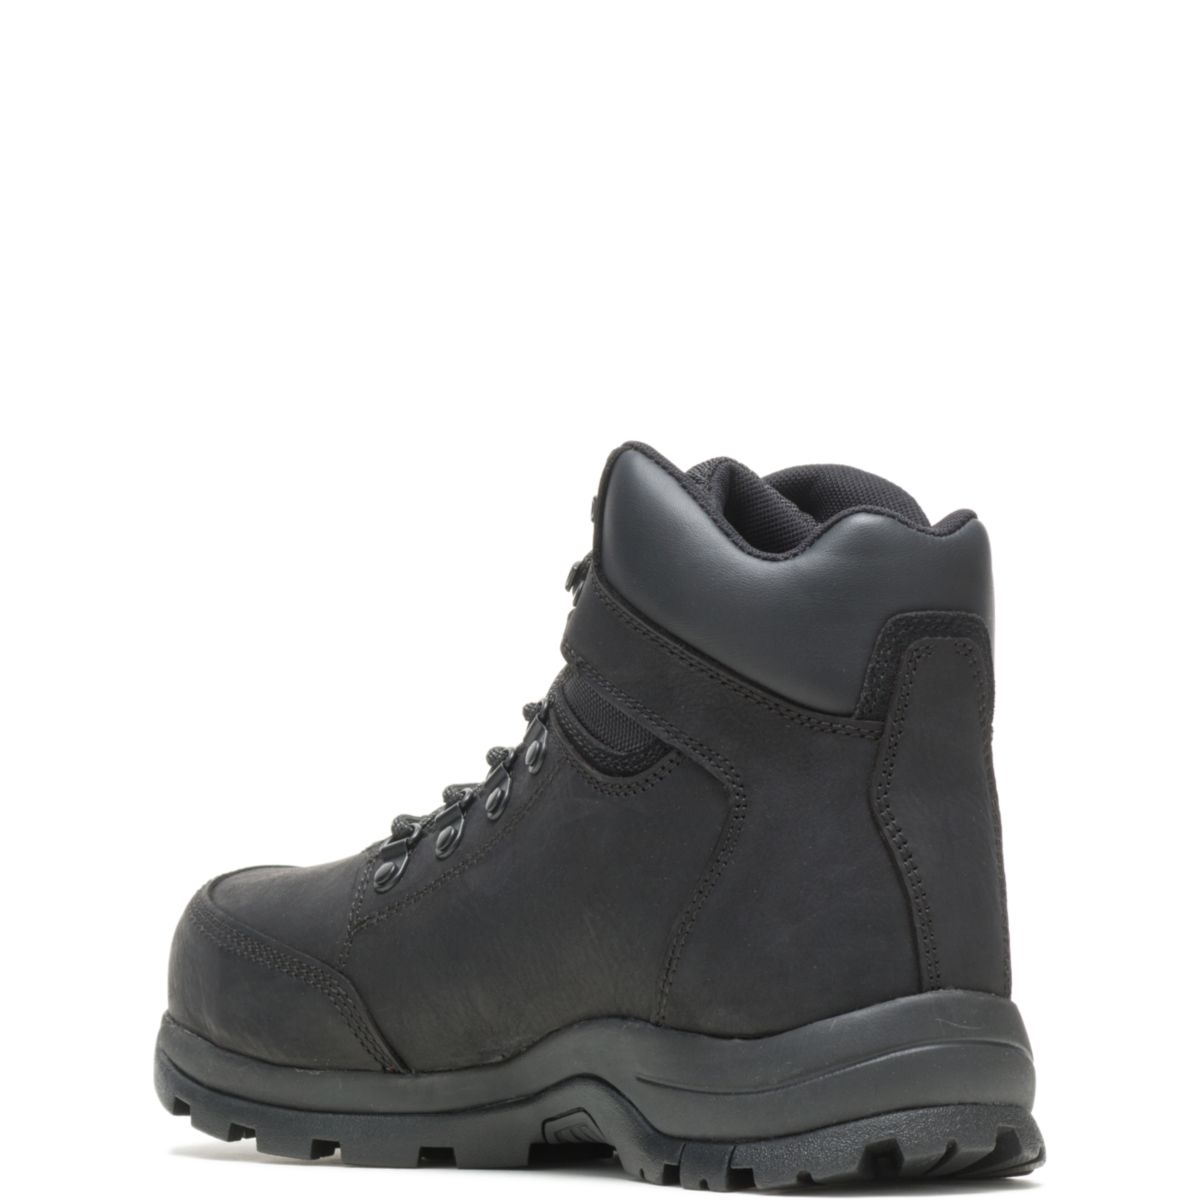 WOLVERINE Men's Grayson Steel Toe Waterproof Work Boot Black - W211042 BLACK - BLACK, 10 X-Wide